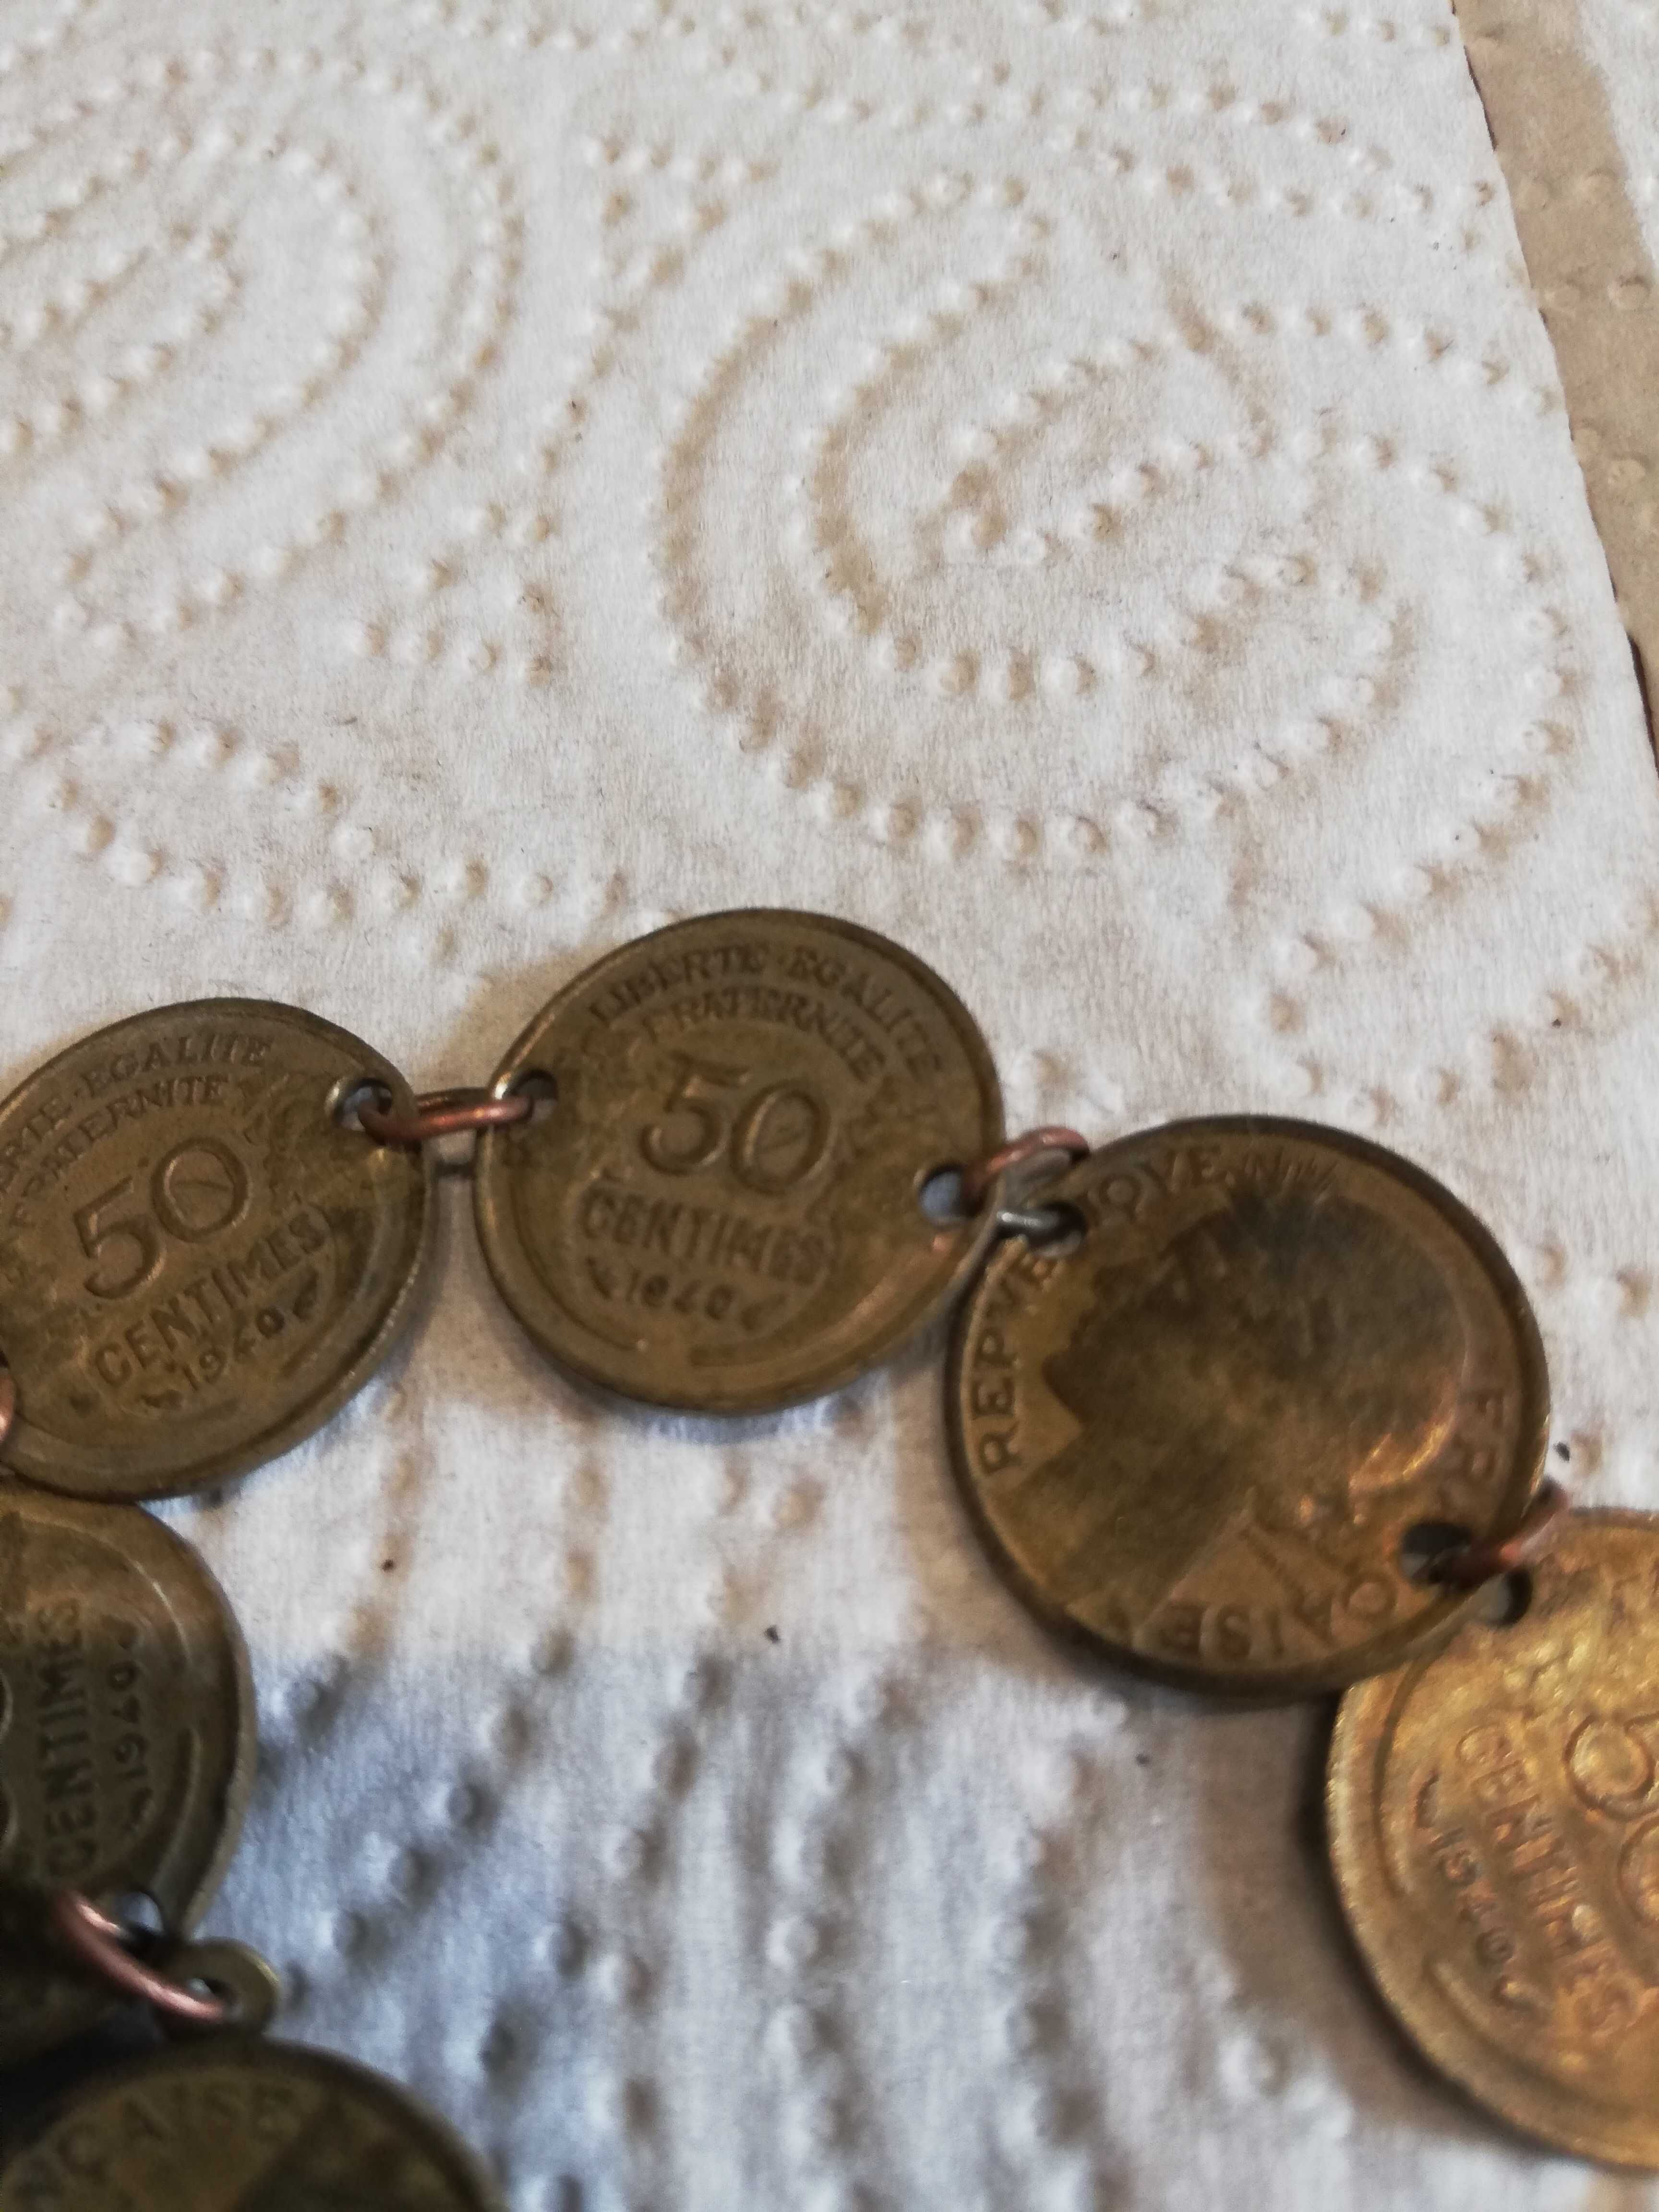 Ciekawe znaleziono branzoleta z monet 1940 r